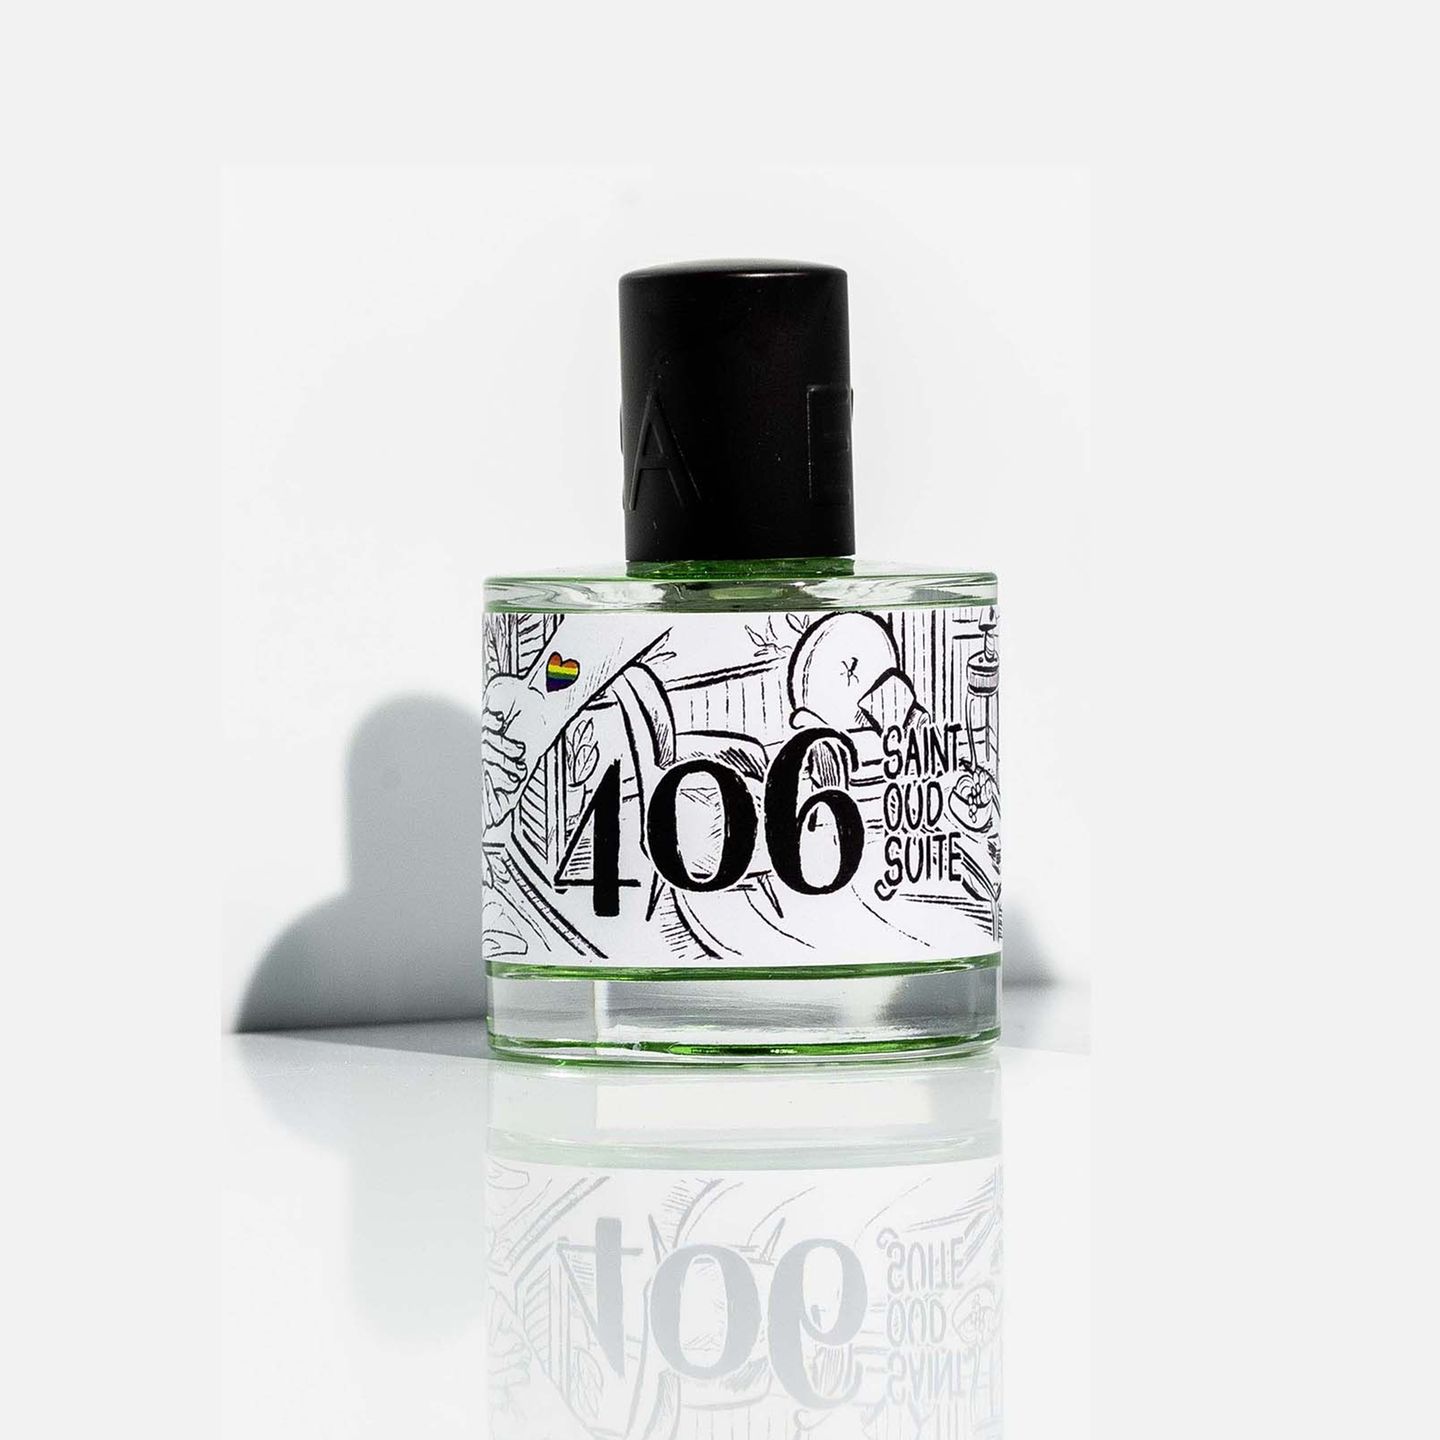 Tattookunst trifft auf Parfum-Expertise – die limitierte Pride-Edition des 406 Saint Oud Suite macht bereits vor der Benutzung Spaß. Parfum von Evora, ca. 50 Euro. 